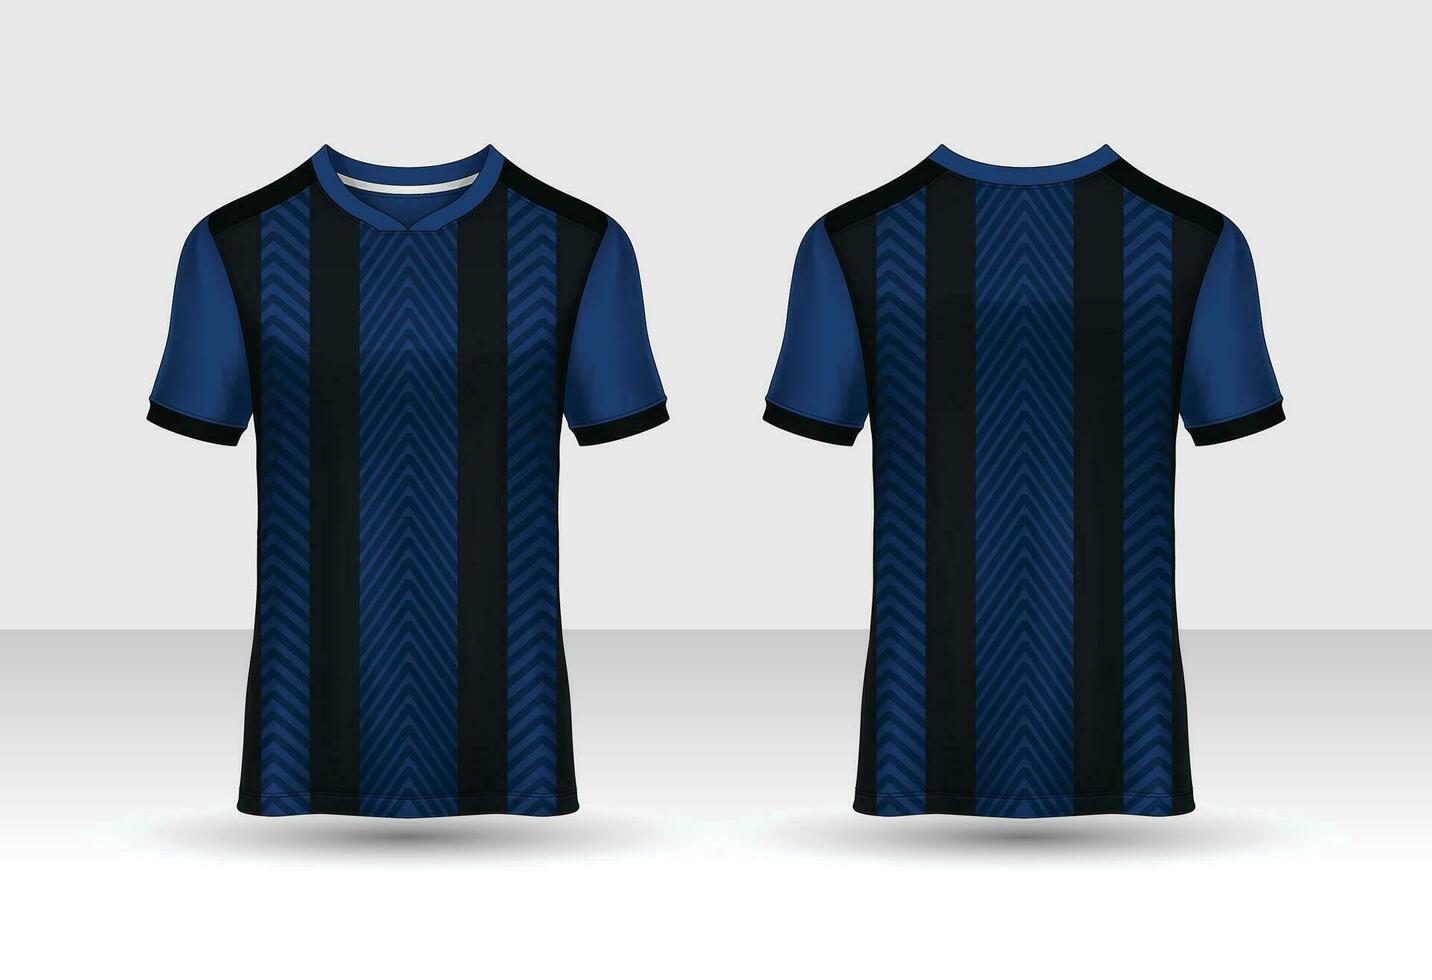 tessuto tessile per sport maglietta ,calcio maglia modello per calcio club. uniforme davanti e indietro Visualizza. vettore